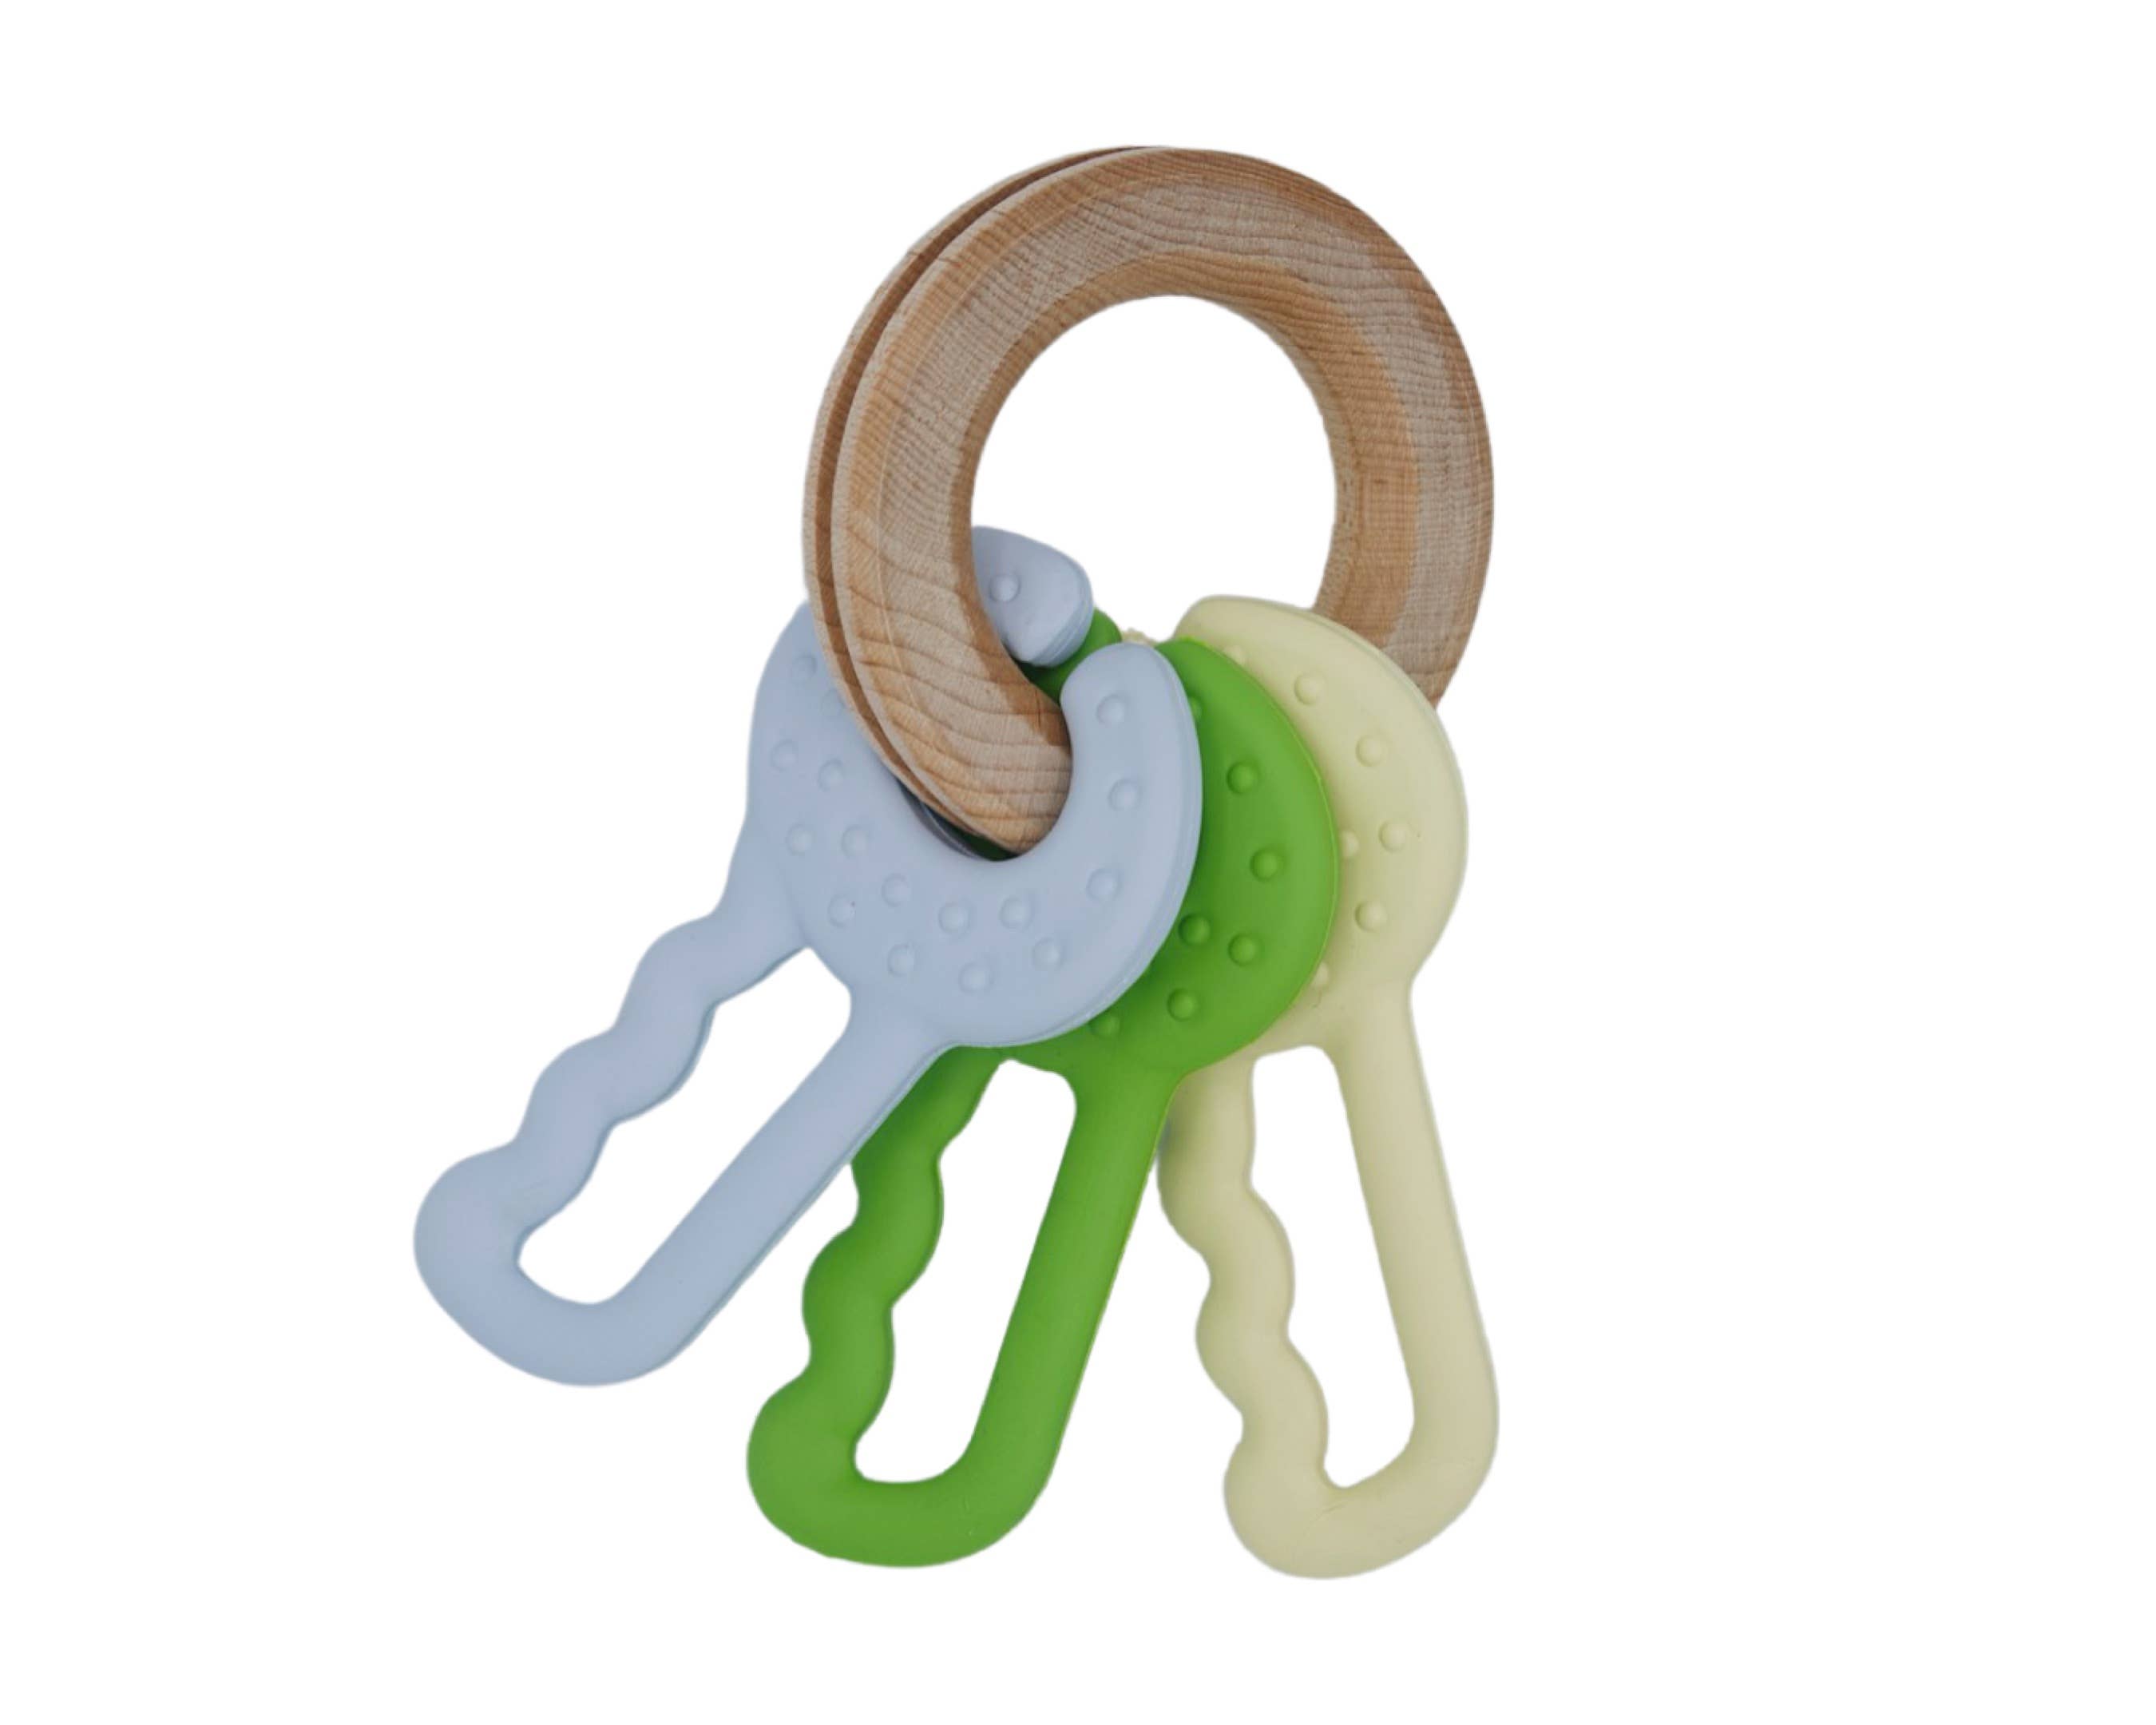 Keys Clutching & Teething Toy